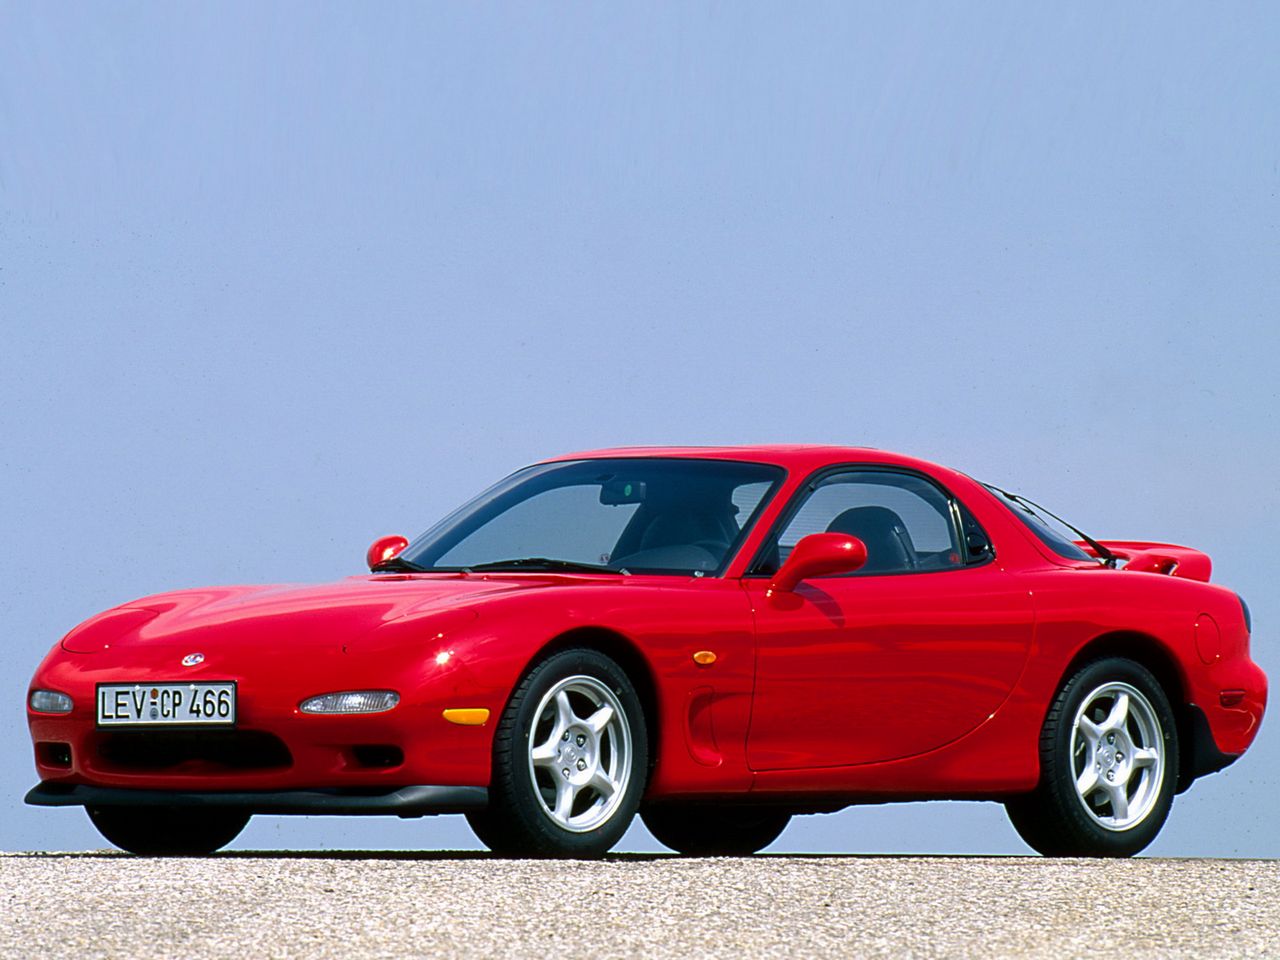 Kolejny oryginał w zestawieniu. Mazda RX-7 FD (trzecia generacja), produkowana w latach 1992-2002 to najbardziej kultowy i najrzadziej spotykany model linii RX. Jedynej stosującej do końca silniki Wankla. Na dobrą sprawę tylko w tych samochodach montowano taki motor z powodzeniem przez wiele lat i wyprodukowano tysiące egzemplarzy. Warto jednak zaznaczyć, że Mazda RX-7 to nie tylko interesujący technicznie, ale także stylistycznie wóz. Przepiękny moim zdaniem, o doskonałych proporcjach i miłej dla oka, nienatarczywej sylwetce. Uroku dodają mu jeszcze zamykane światła, które w przeciwieństwie do Hondy NSX przetrwały aż do zakończenia produkcji.